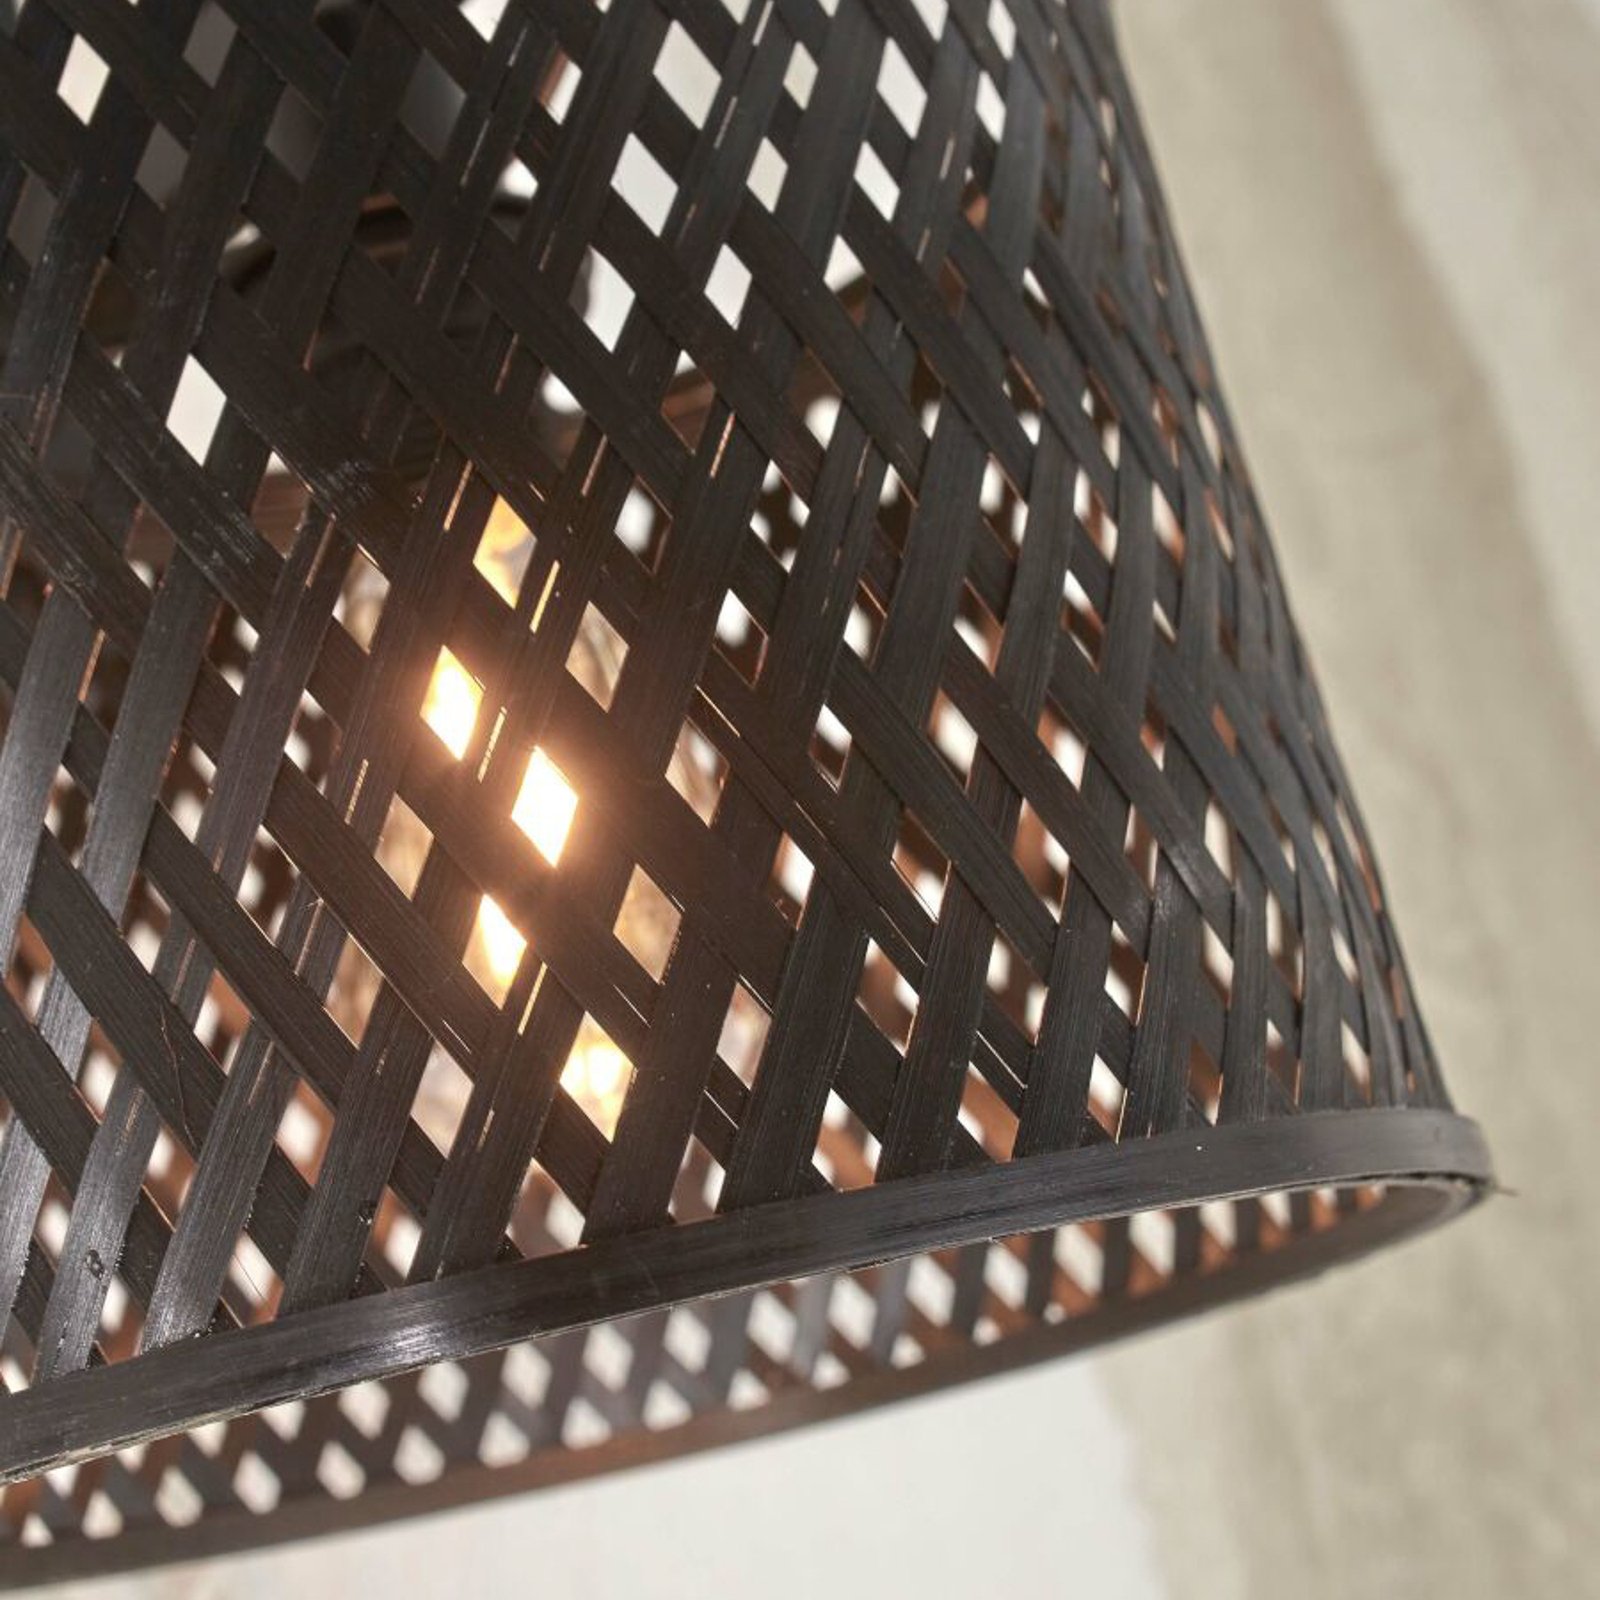 GOOD & MOJO Java stolová lampa, 18 x 15 cm, čierna